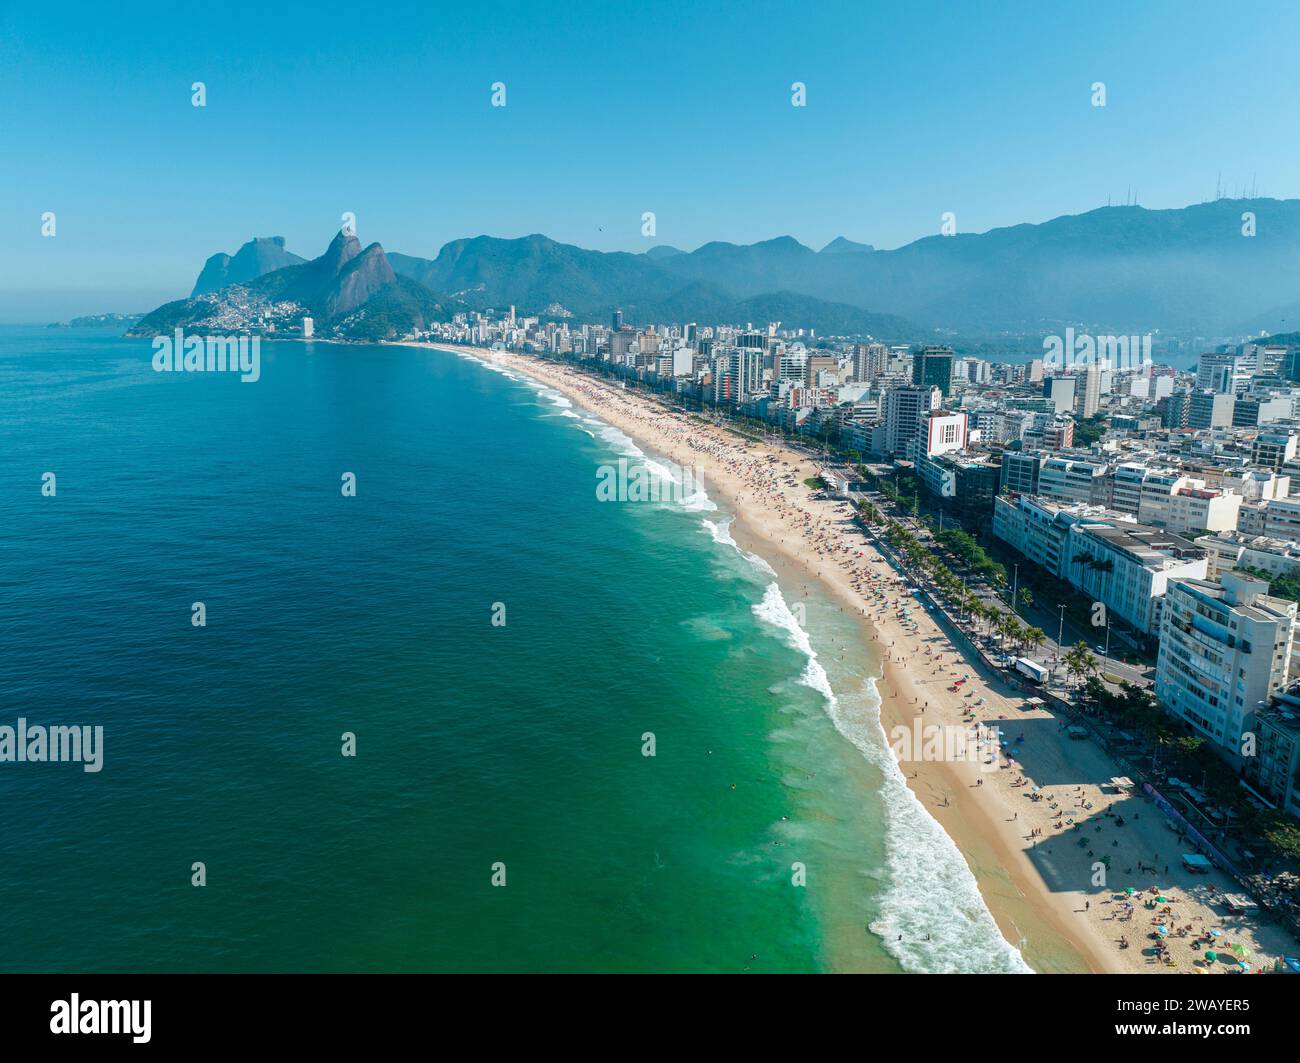 Vista aerea della spiaggia di Ipanema e di Leblon. Persone che prendono il sole e giocano sulla spiaggia, sport di mare. Rio de Janeiro. Brasile Foto Stock